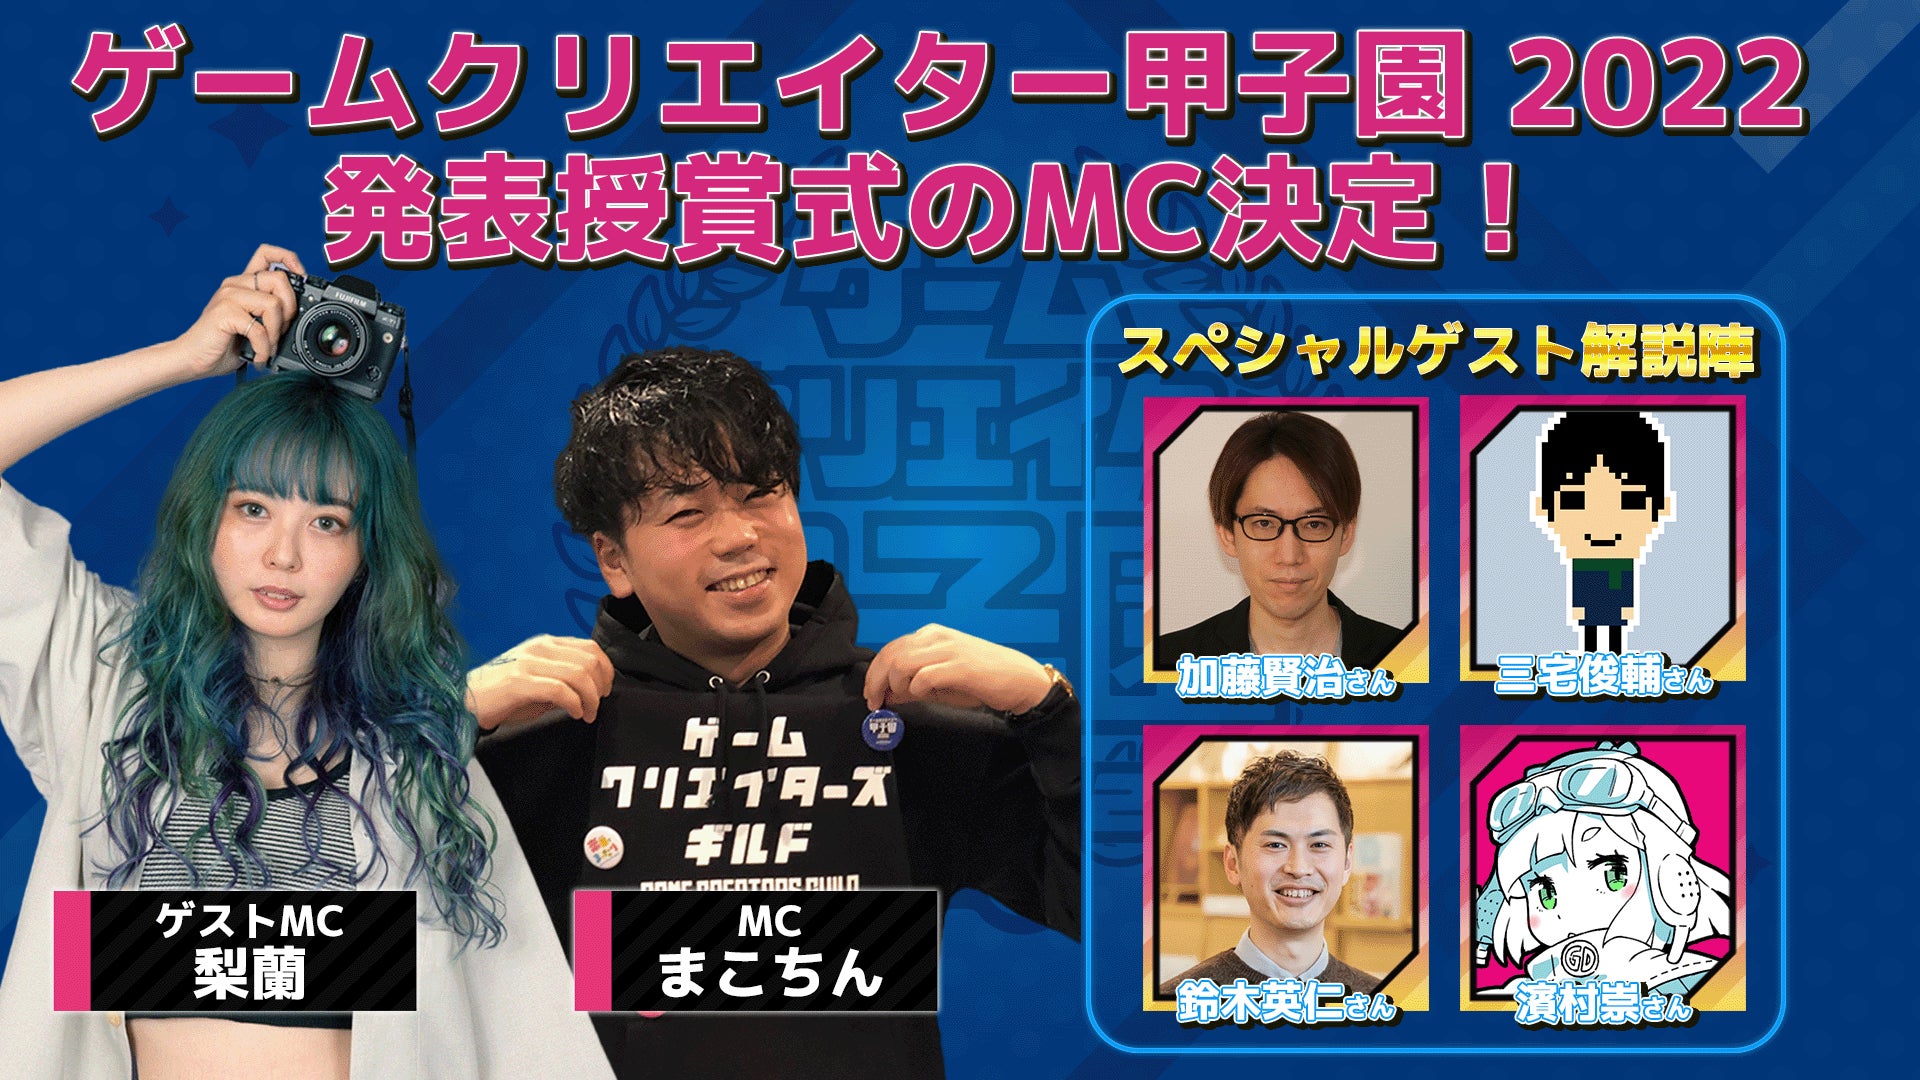 東京工芸大学「コウゲイゲームショウ2023」を1月6日に開催　
創立100周年記念イベントとし、学生が制作したゲーム作品を展示